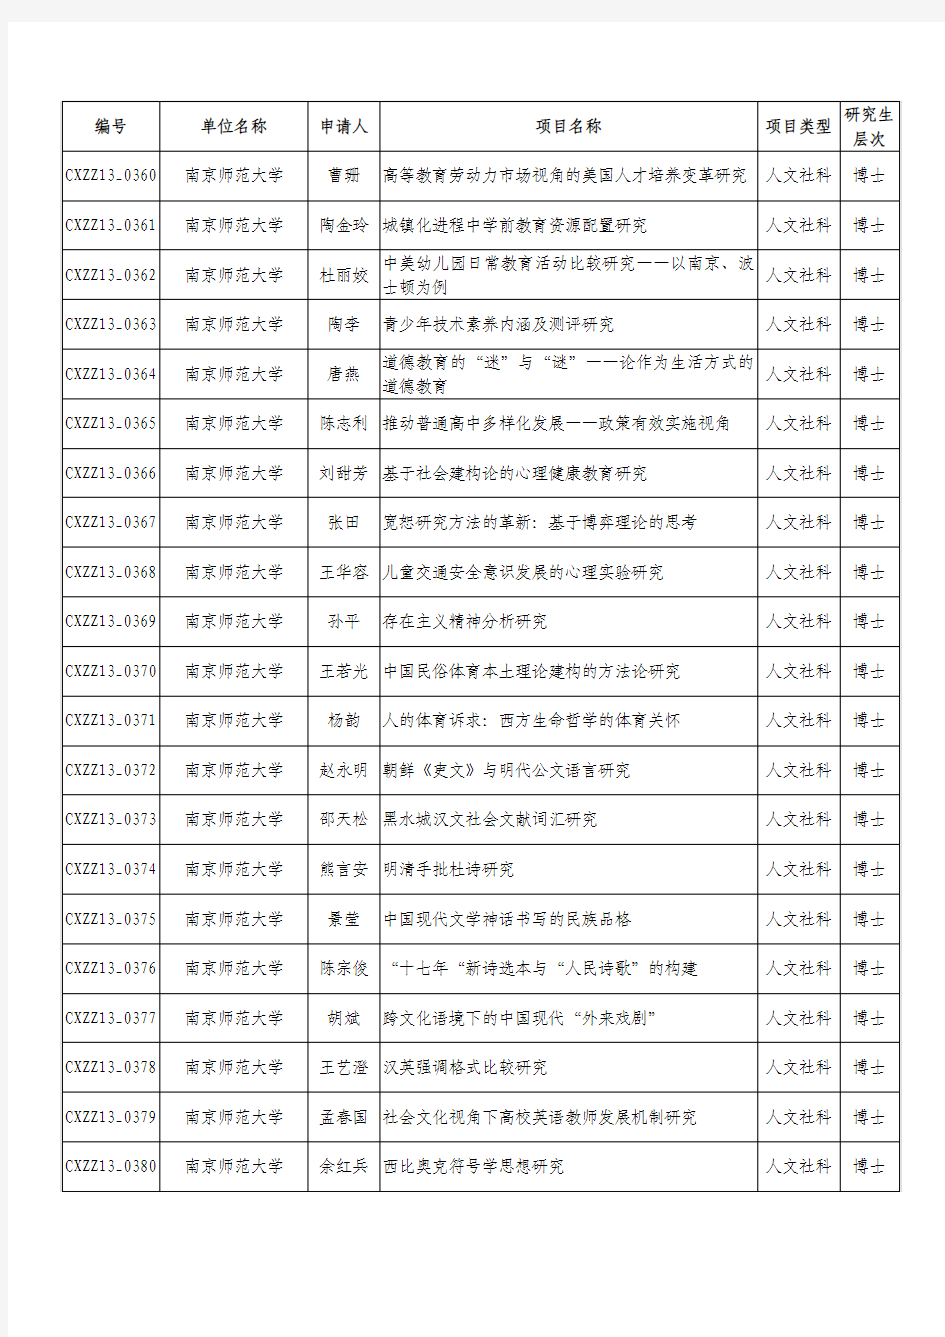 江苏省2013年度普通高校研究生科研创新计划项目名单